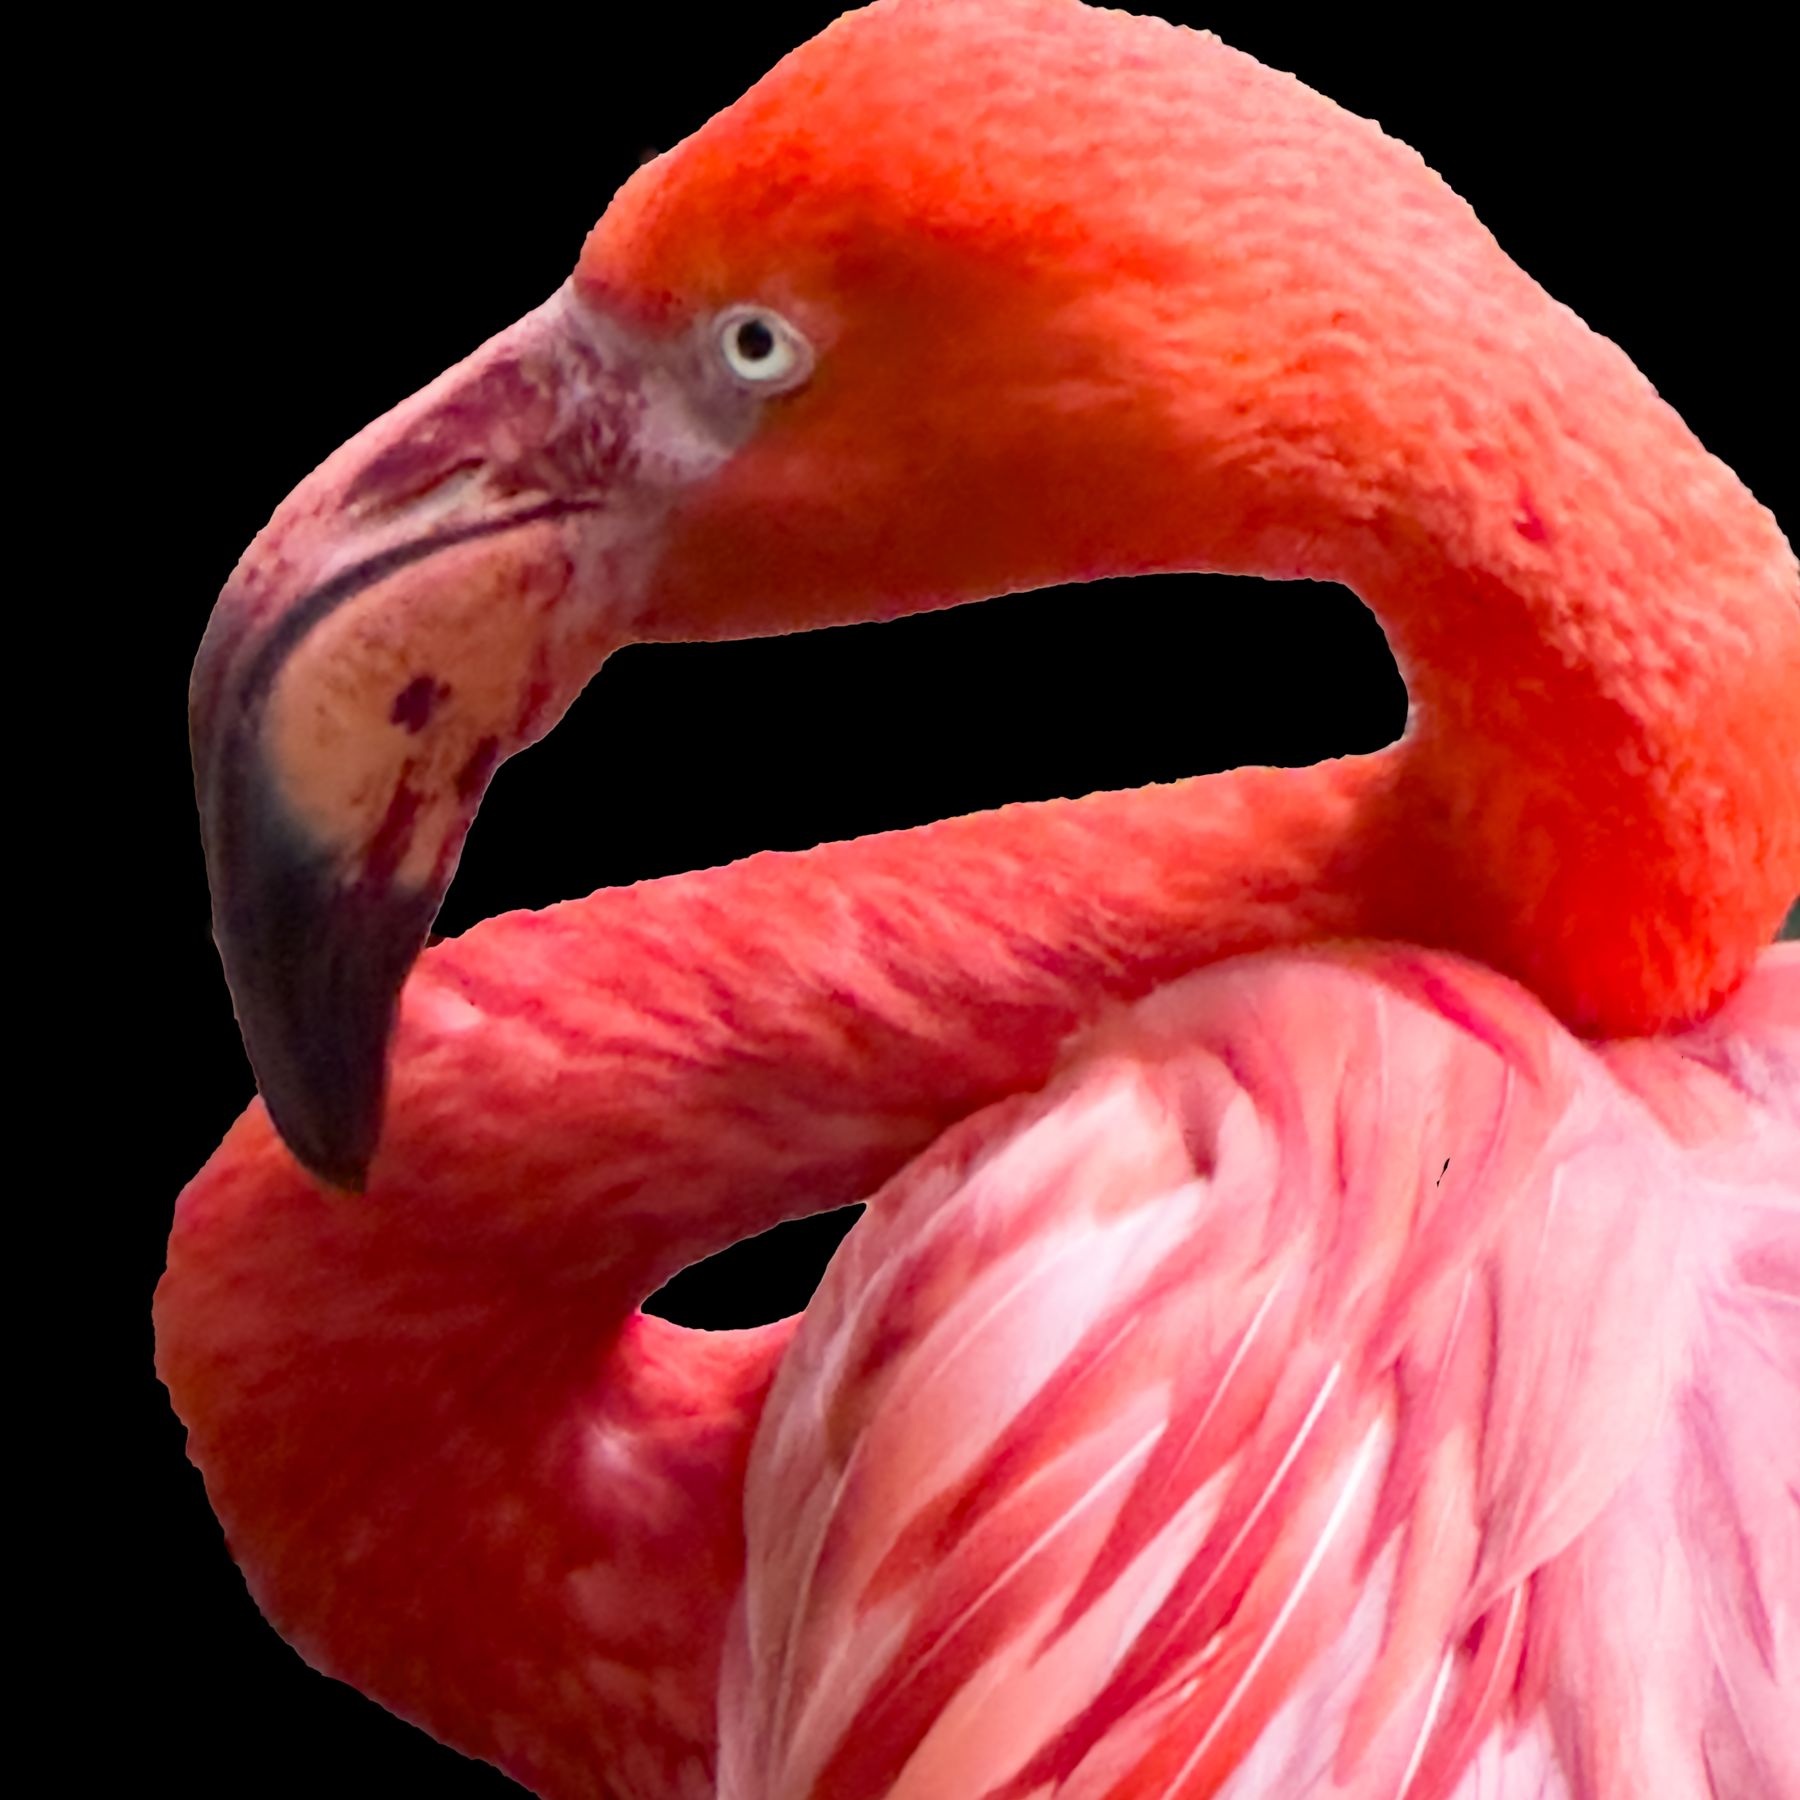 Flamingo in a Square